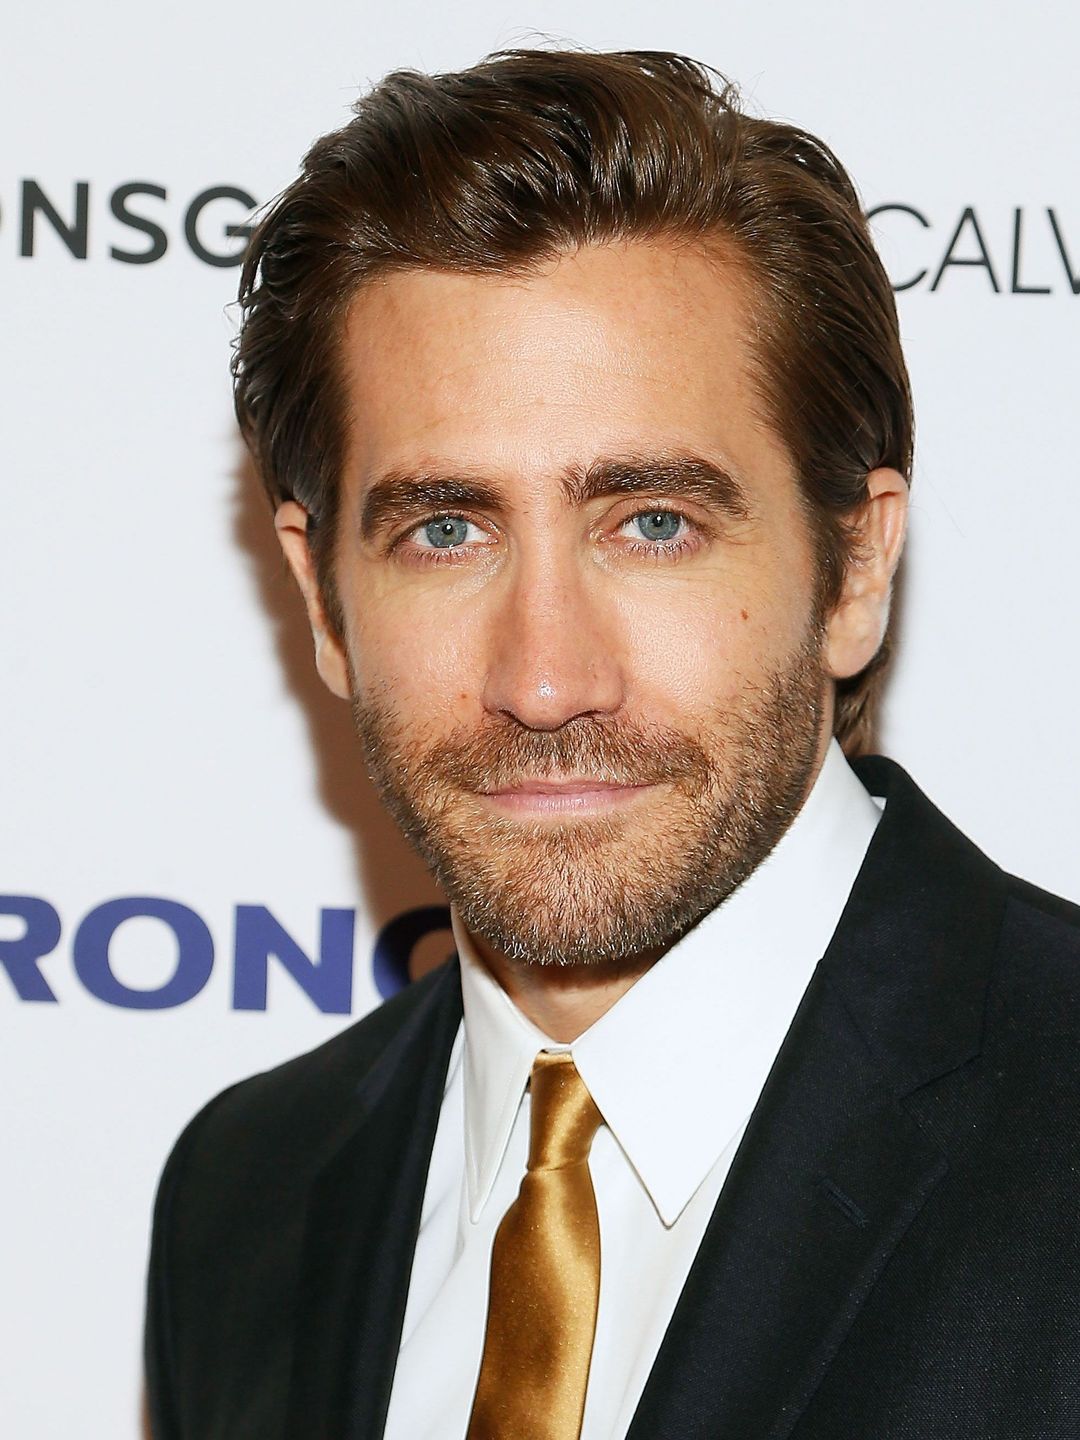 Jake Gyllenhaal personal life